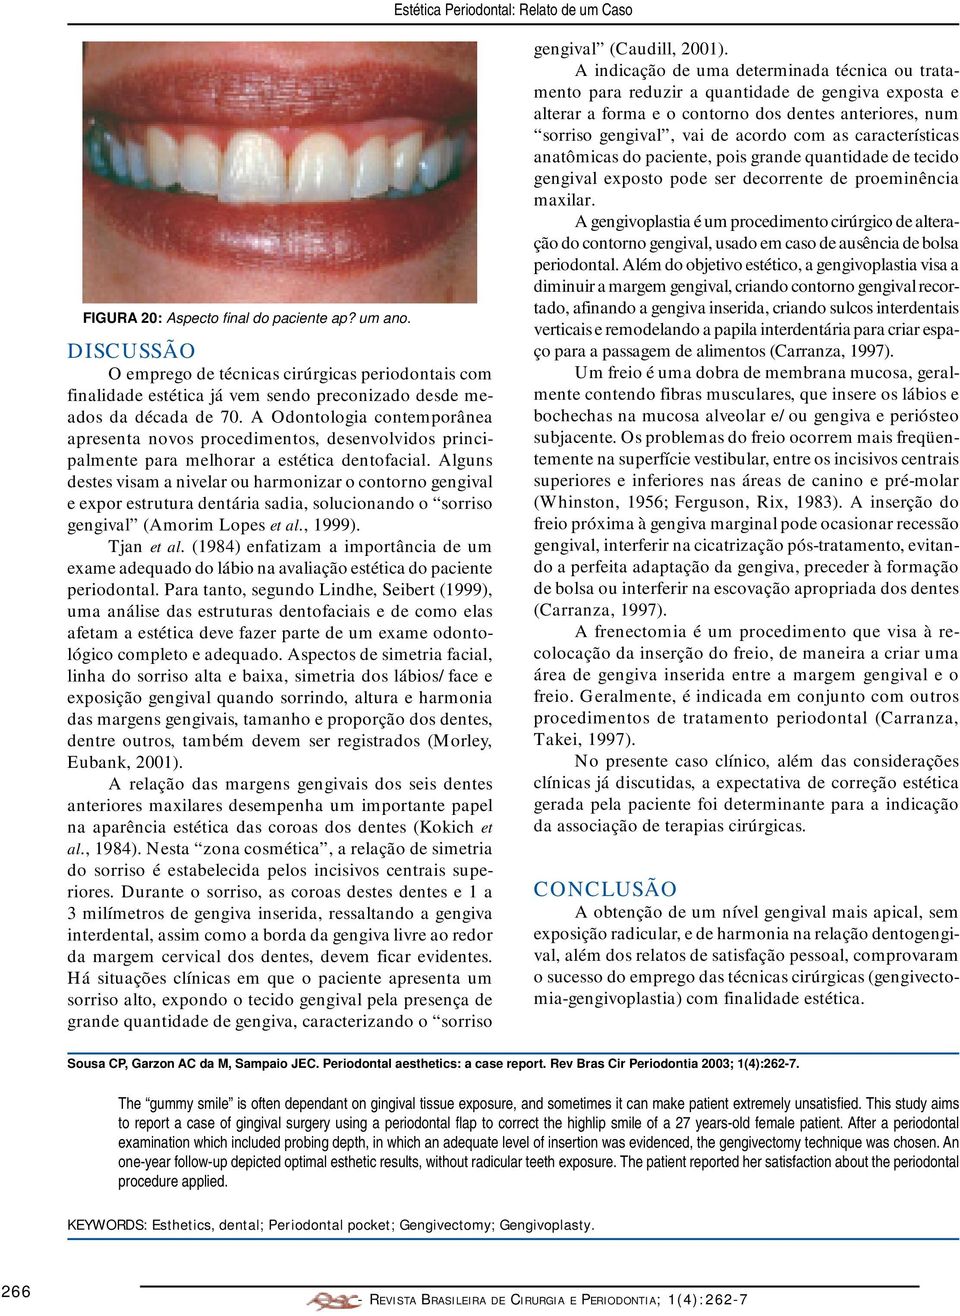 Alguns destes visam a nivelar ou harmonizar o contorno gengival e expor estrutura dentária sadia, solucionando o sorriso gengival (Amorim Lopes et al., 1999). Tjan et al.